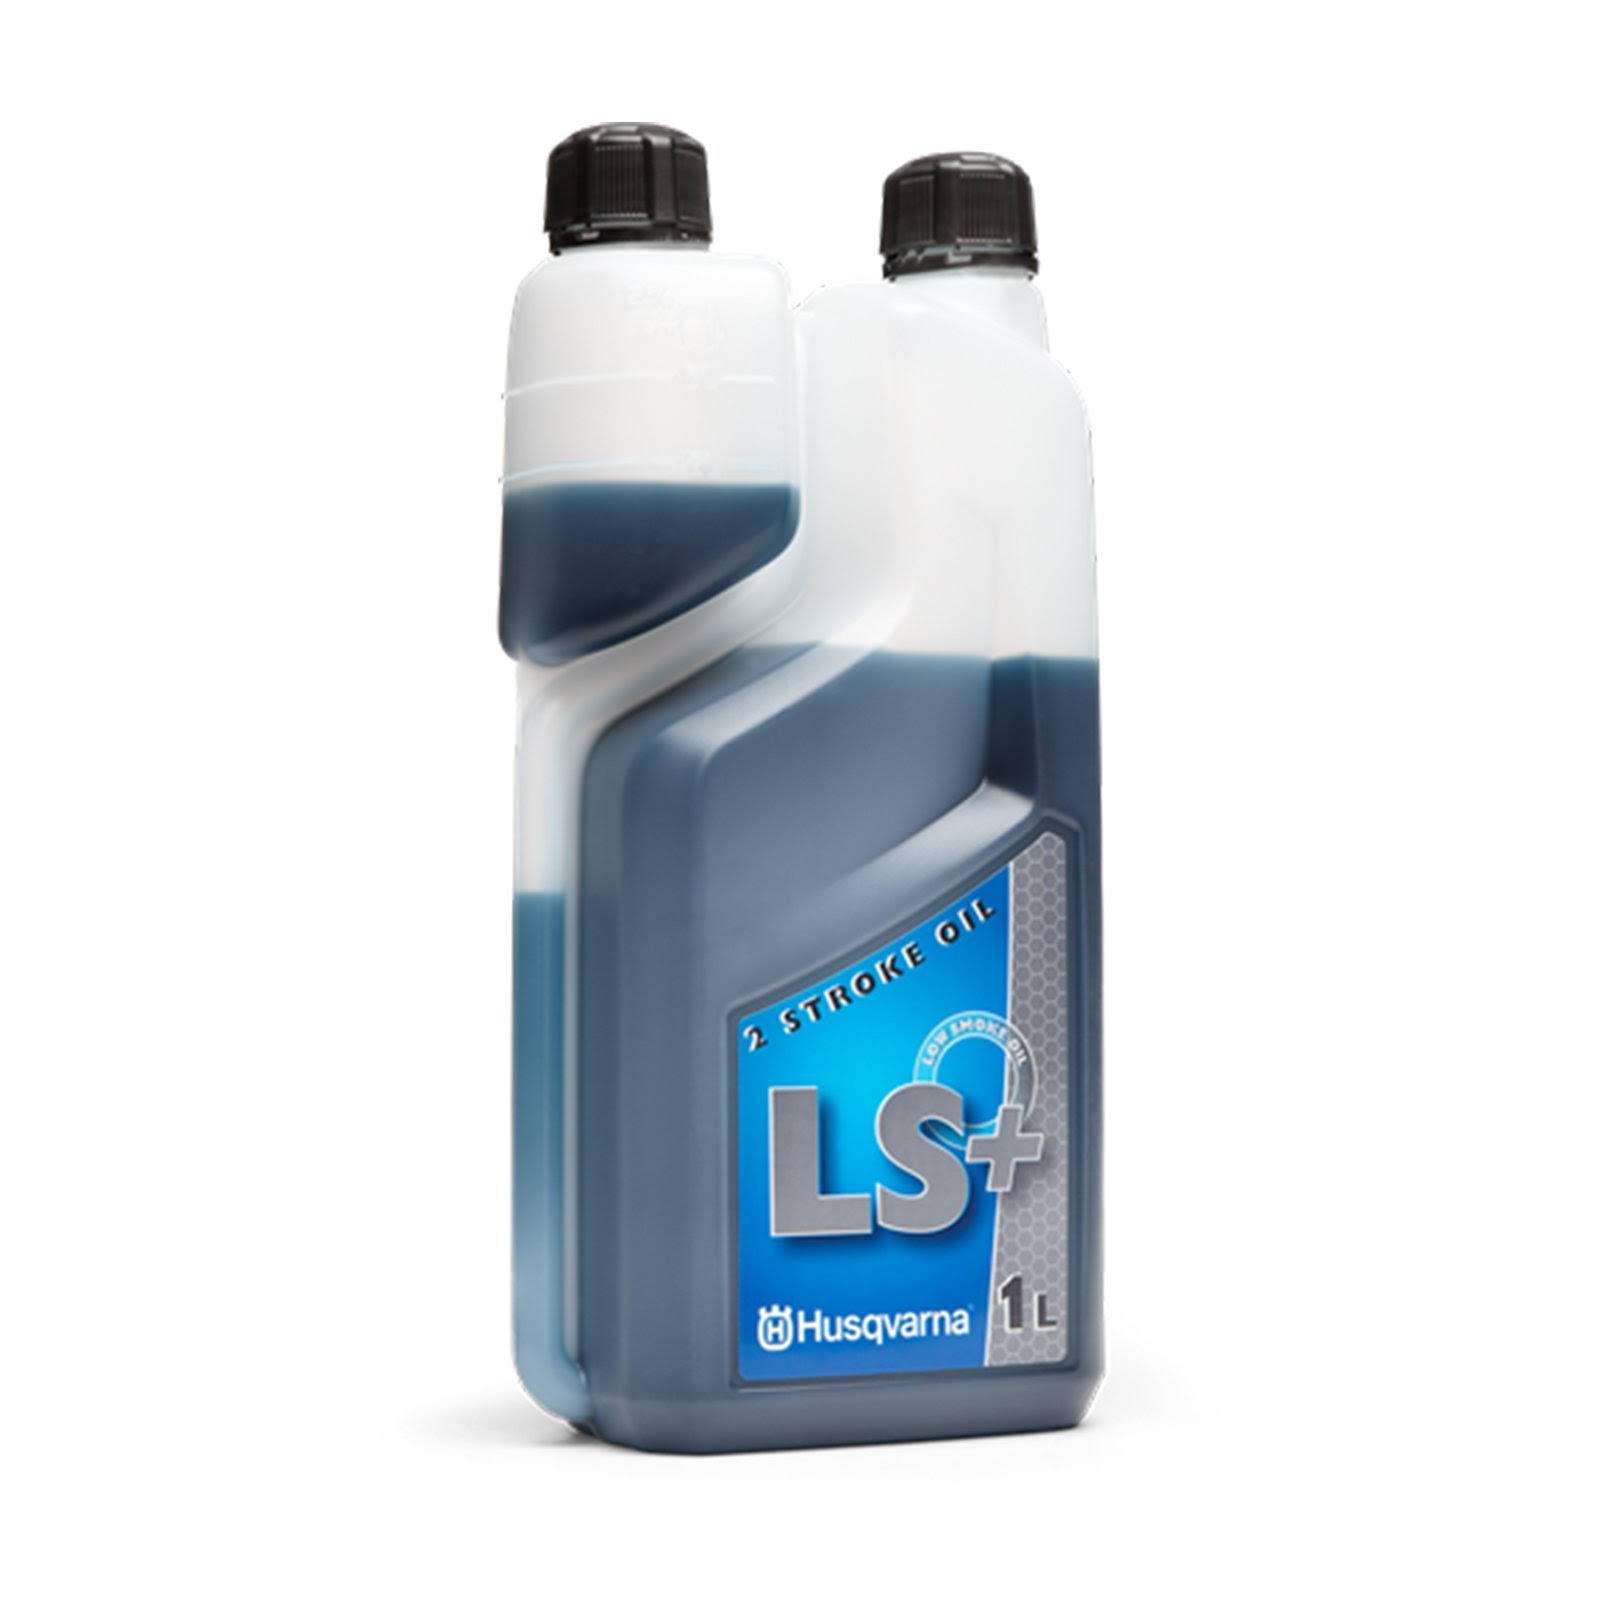 Husqvarna LS+2 Stroke Semi Sythetic Oil - 1l